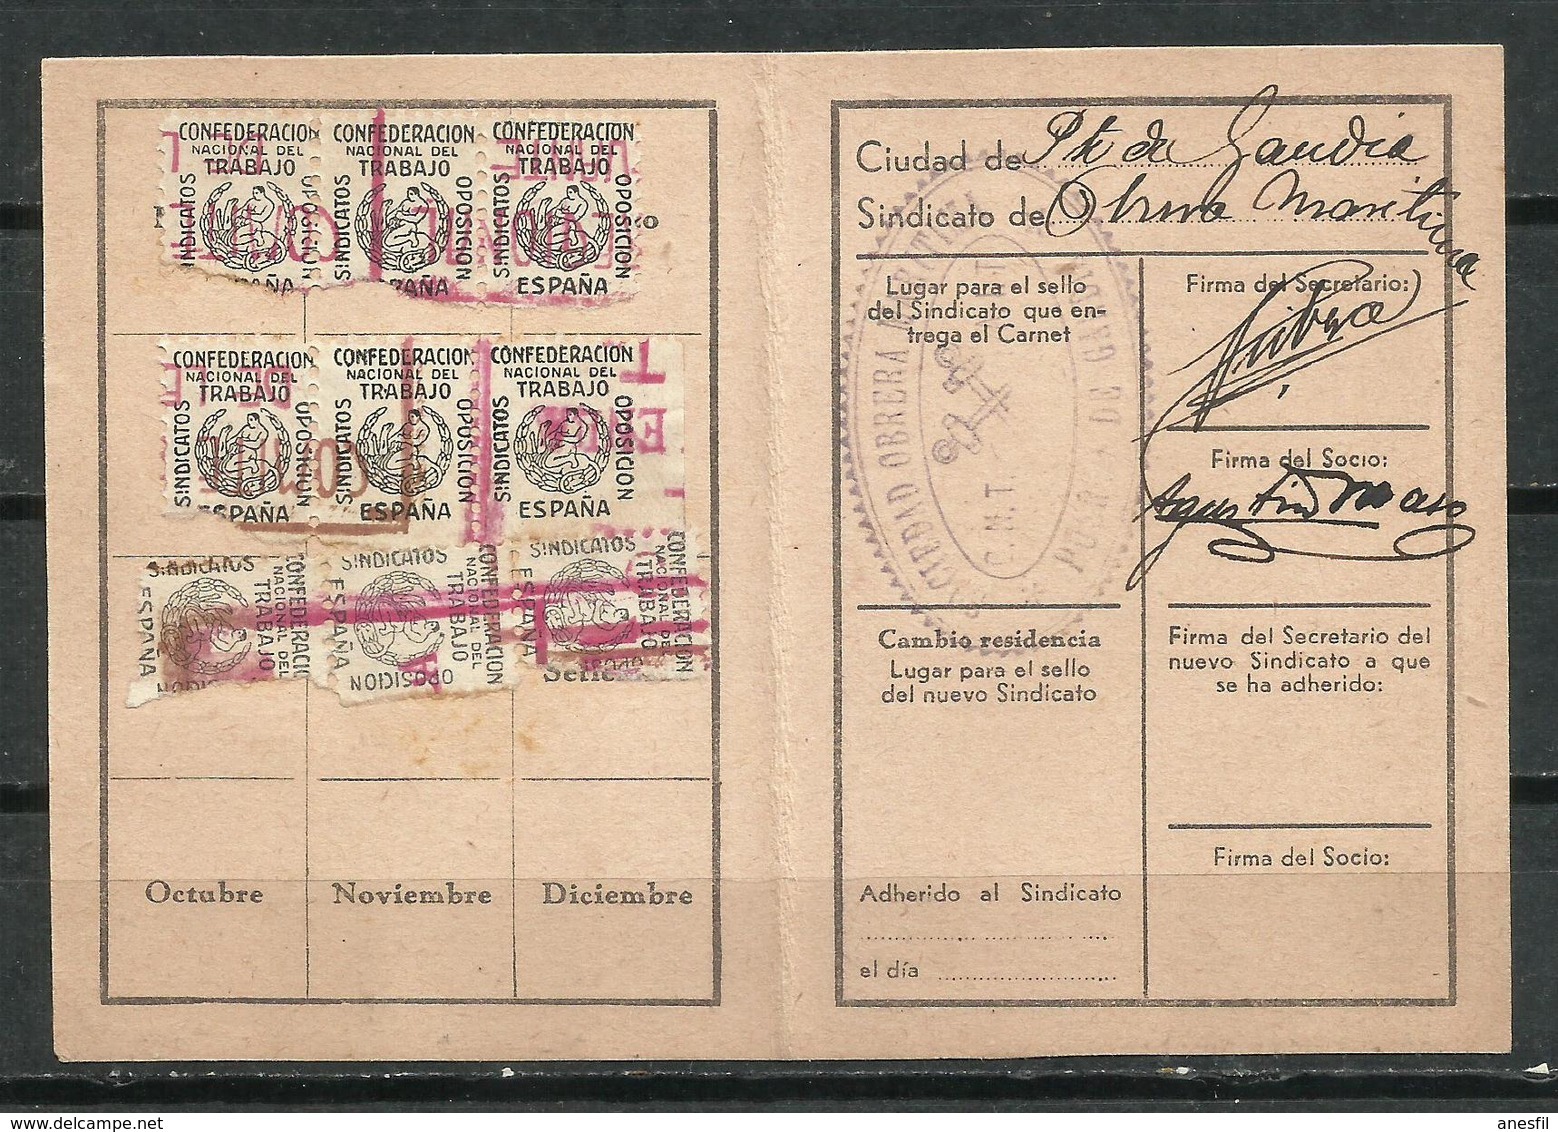 España. 1935. Carta Confederal De La CNT. (Confederación Nacional De Trabajo) - Documentos Históricos